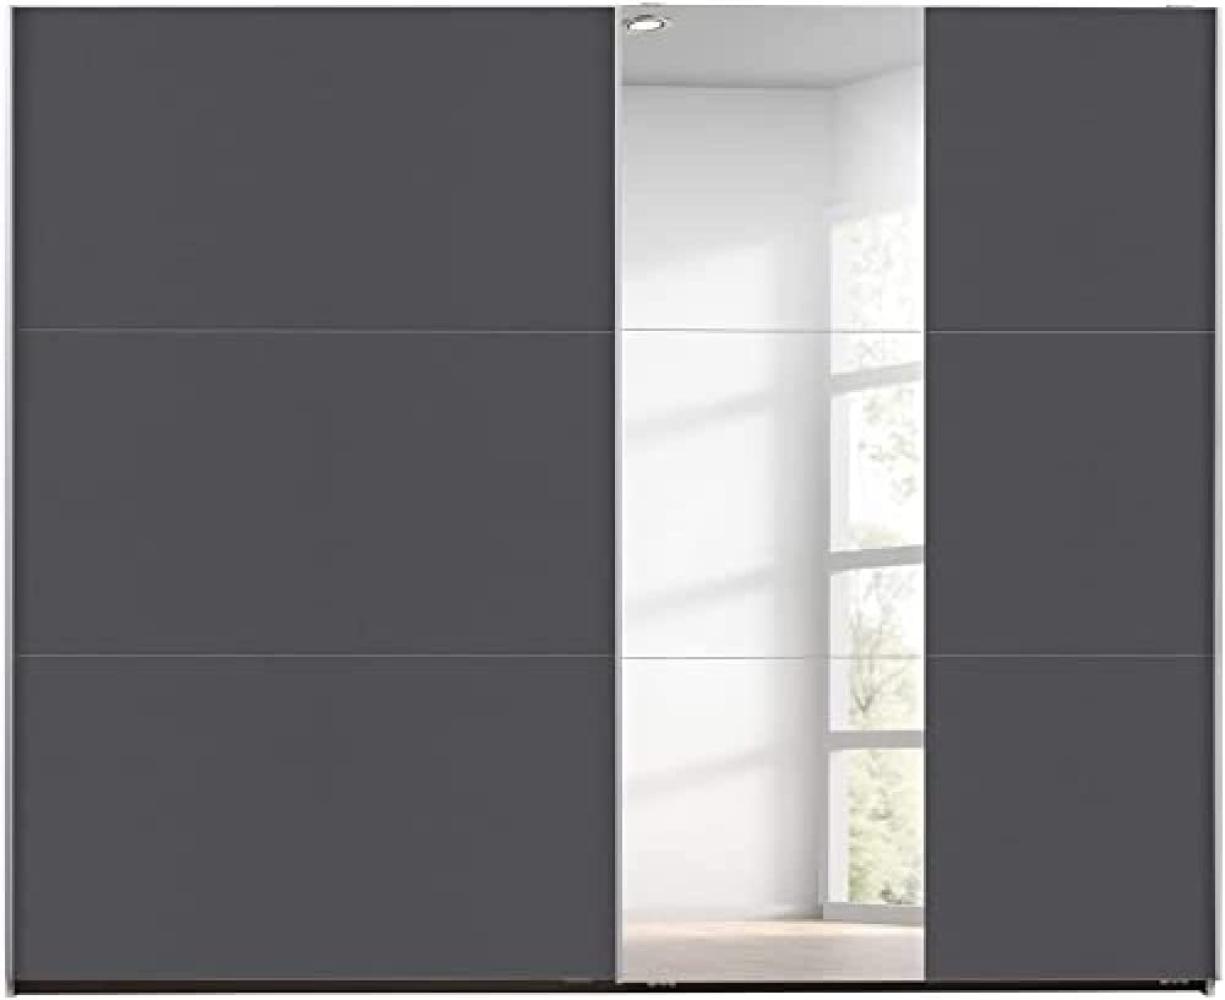 Rauch Möbel Santiago Schwebetürenschrank, Holz, grau-metallic, BxHxT: 261x210x59 cm Bild 1